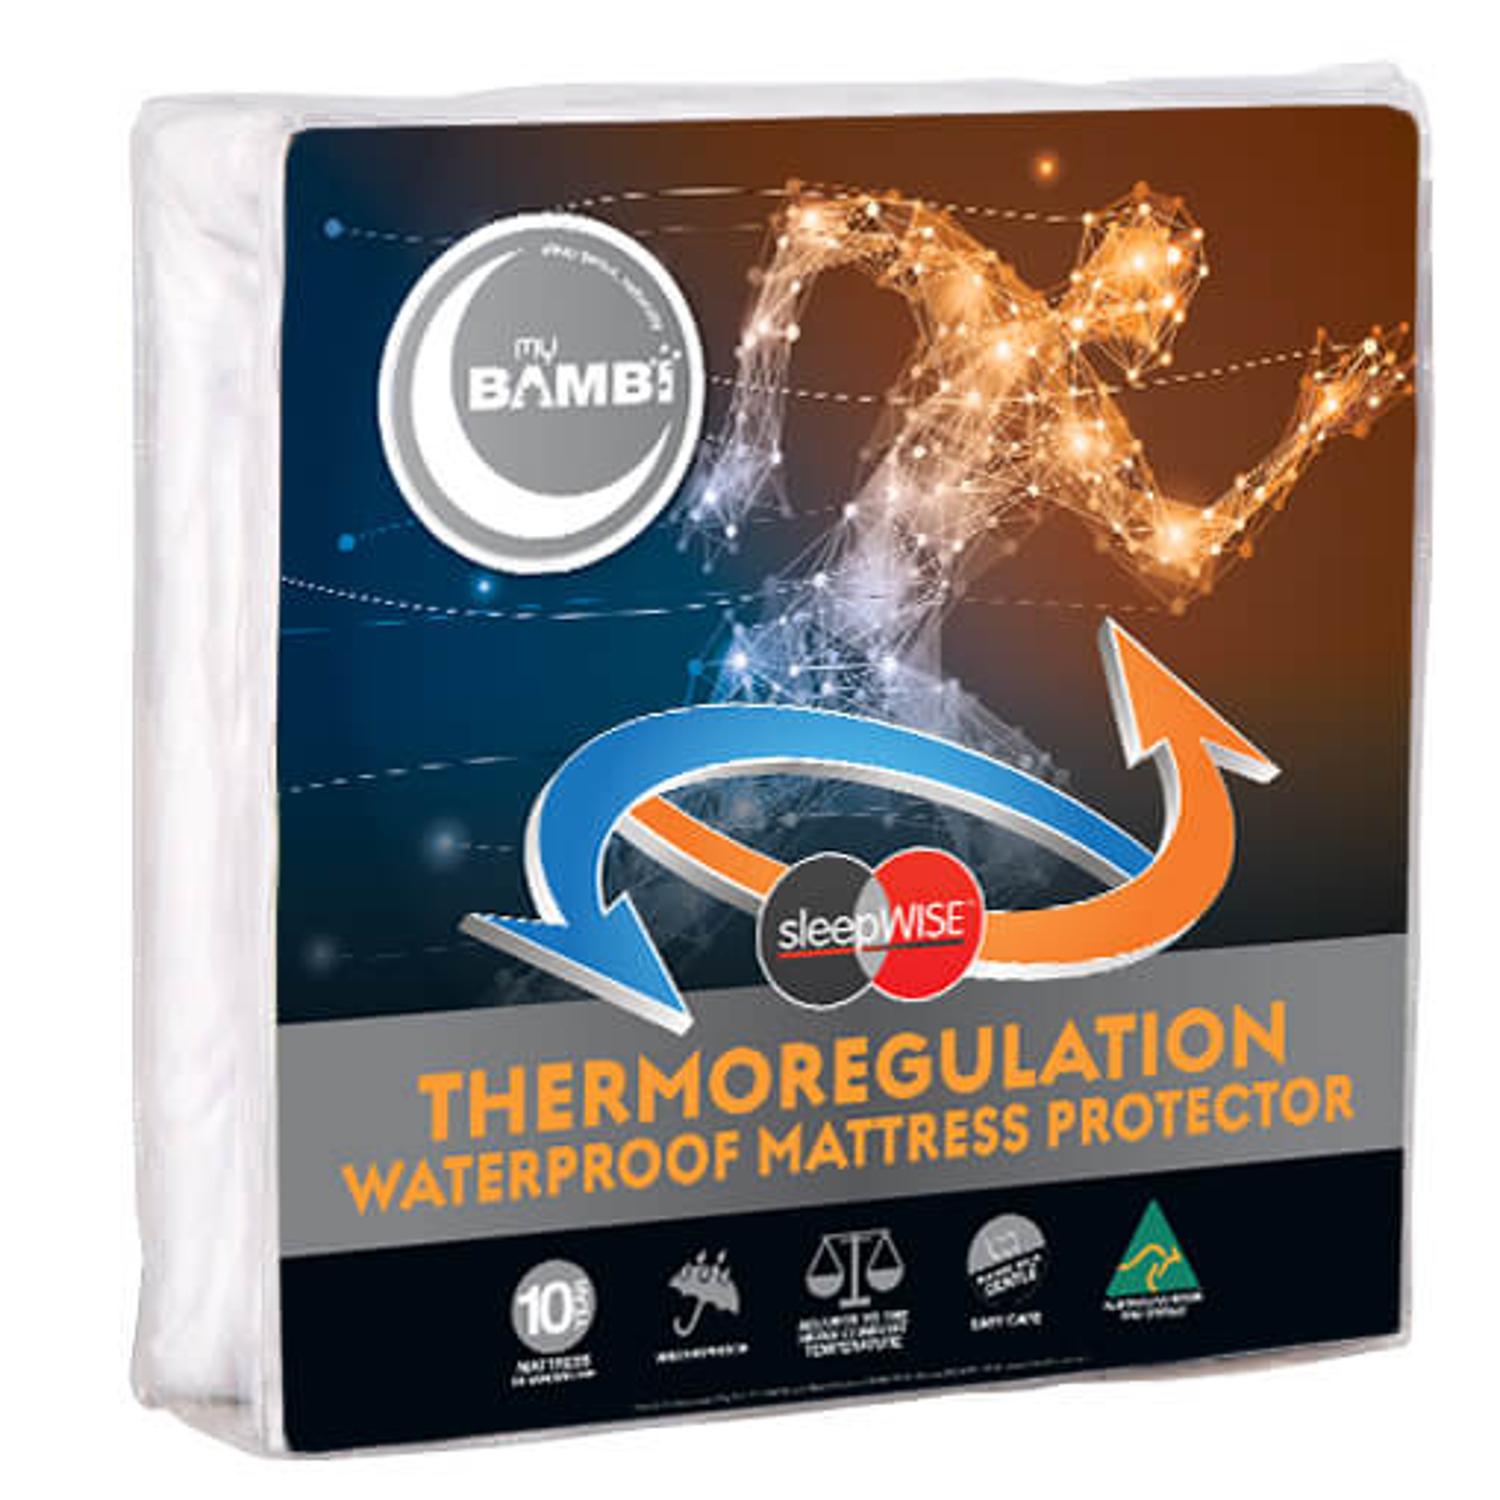 Sleepwise Mattress Protector